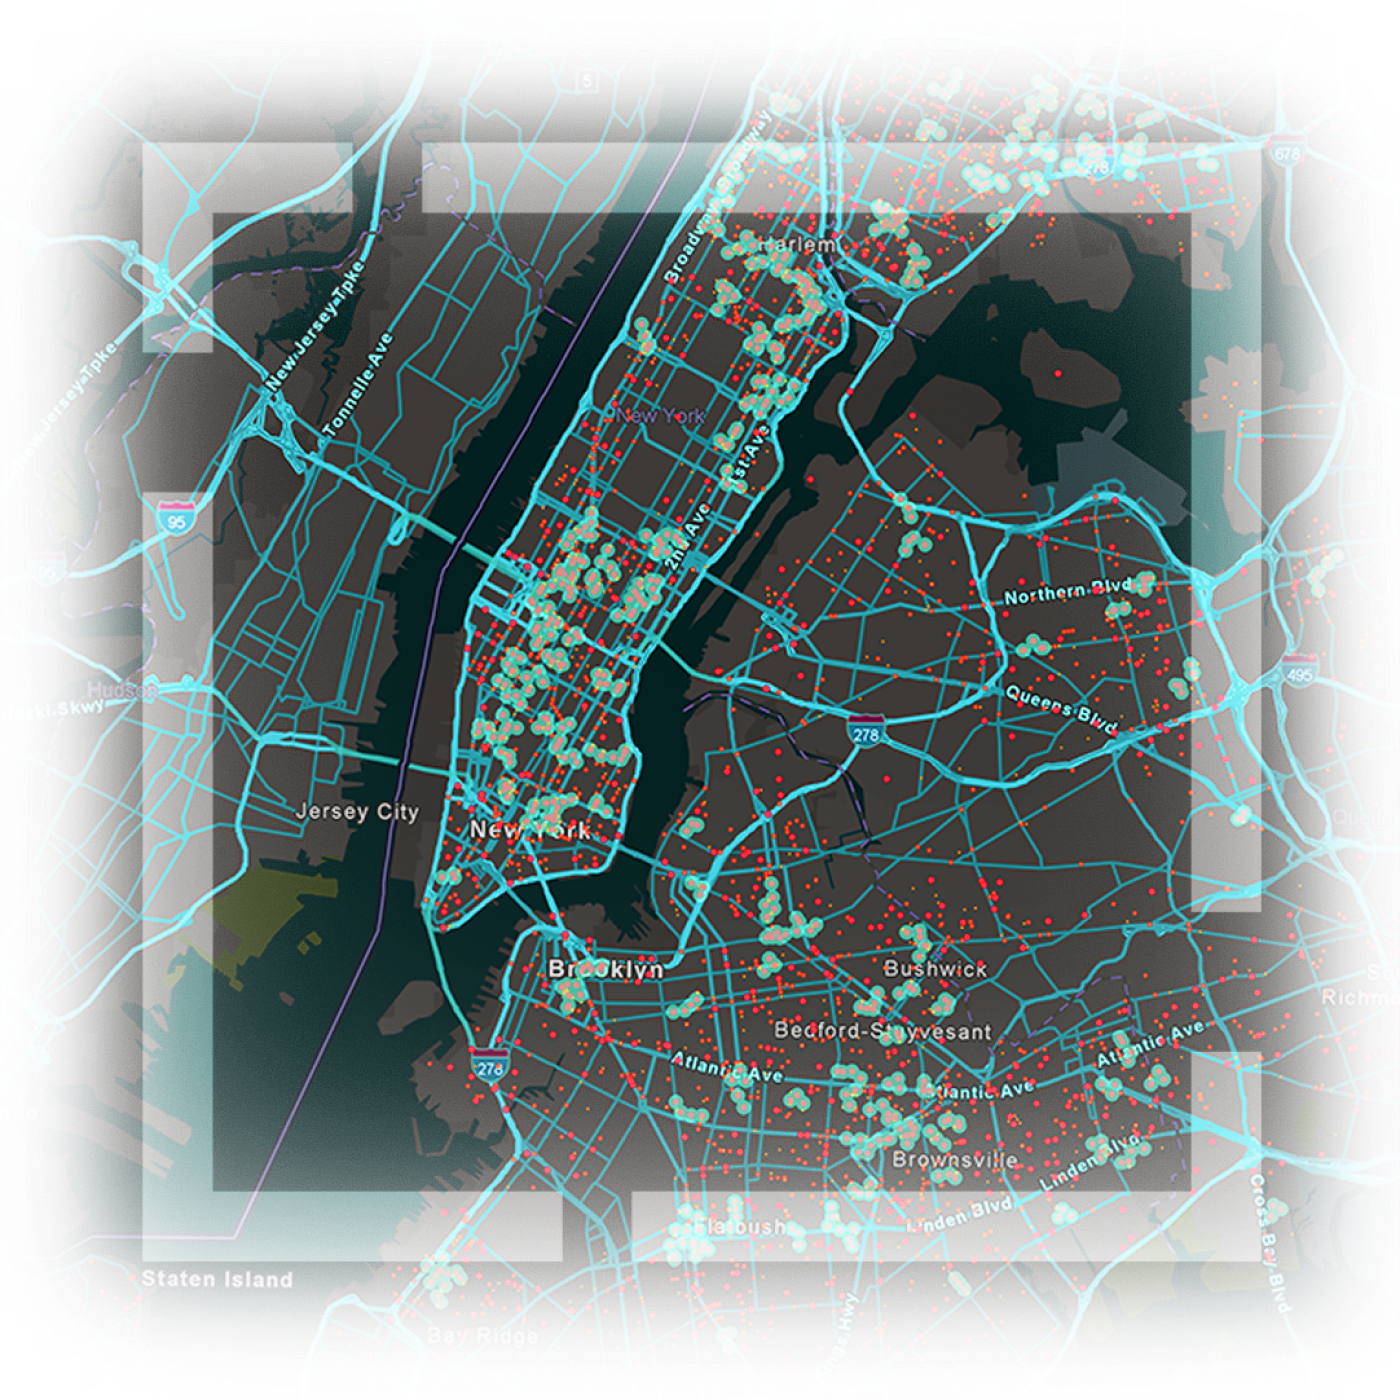 一张纽约市地图，显示高速公路、道路以及用蓝色和红色线条标出的资产位置 一张纽约市地图，显示高速公路、道路以及用蓝色和红色线条标出的资产位置